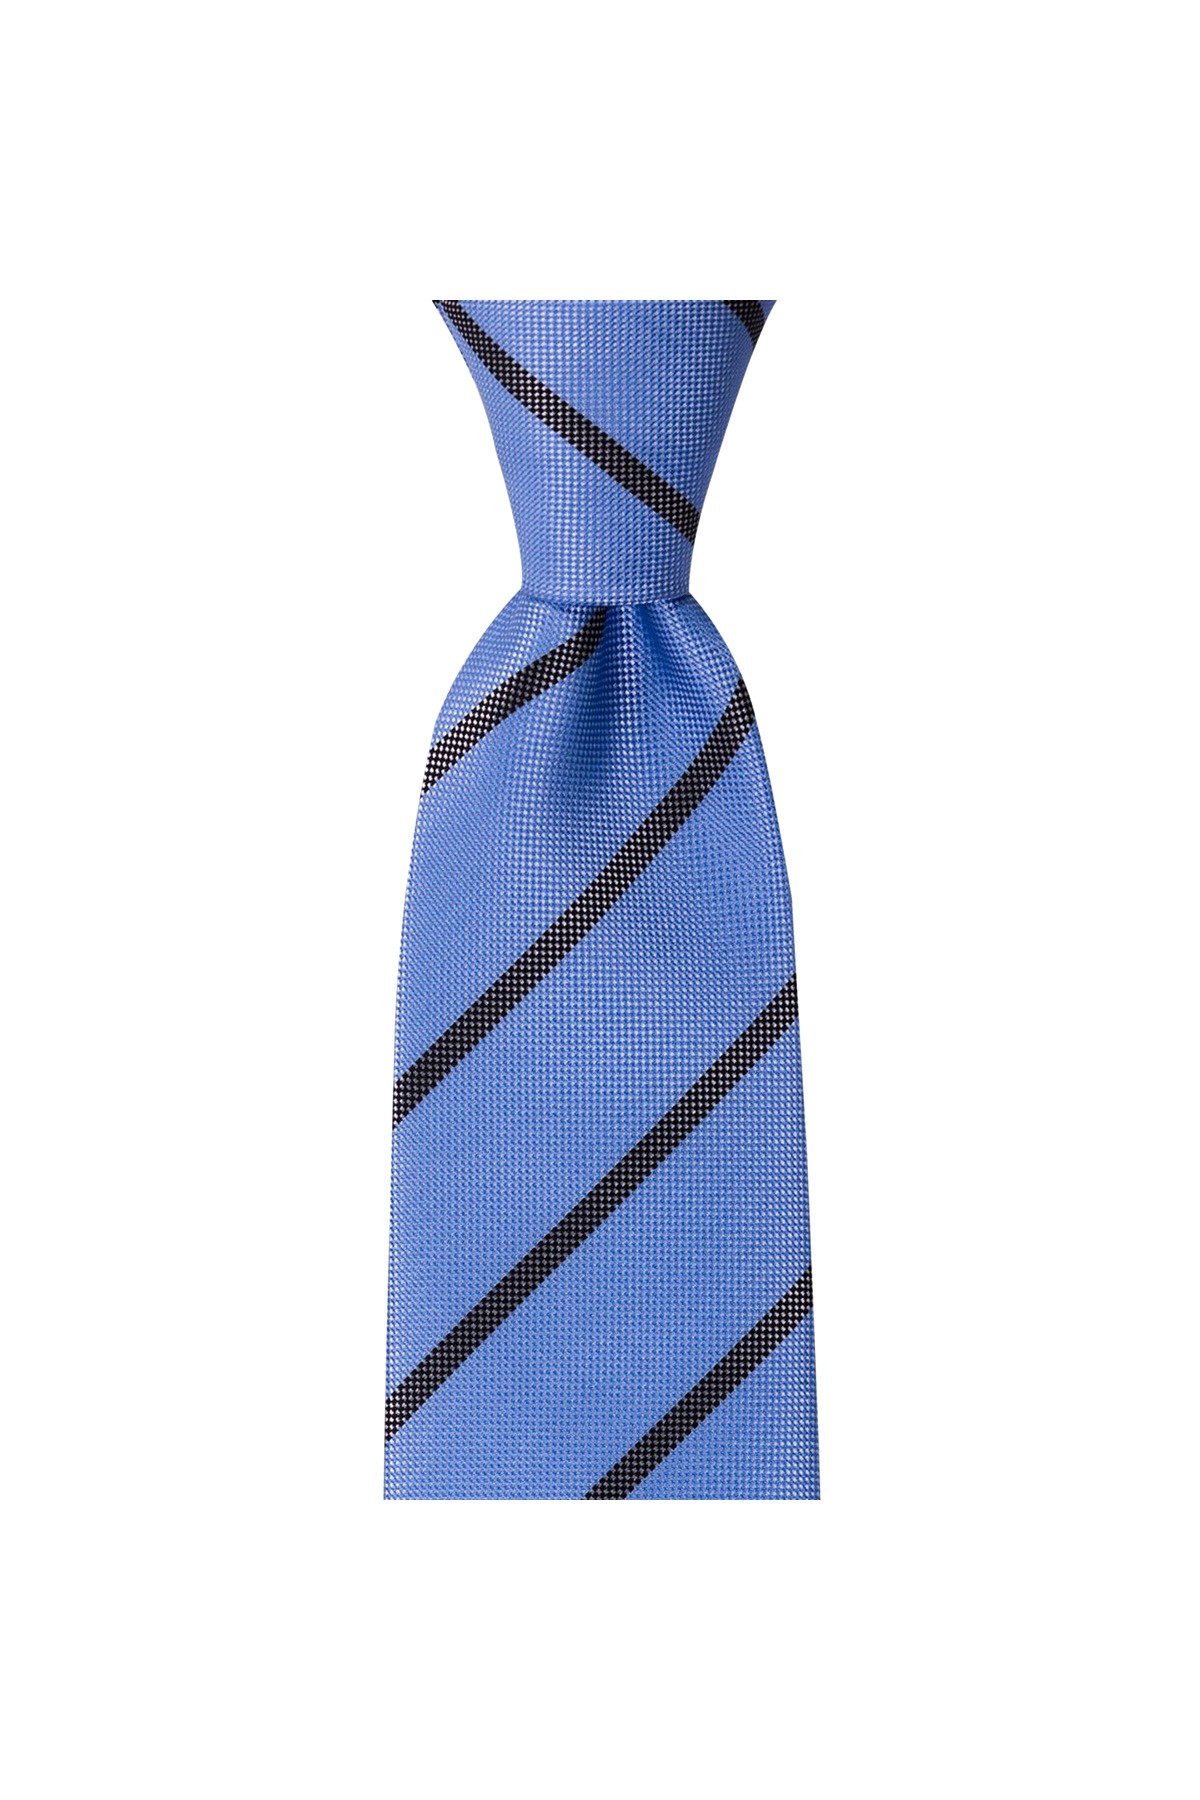 Klasik çizgili 8 cm genişliğinde mendilli kravat